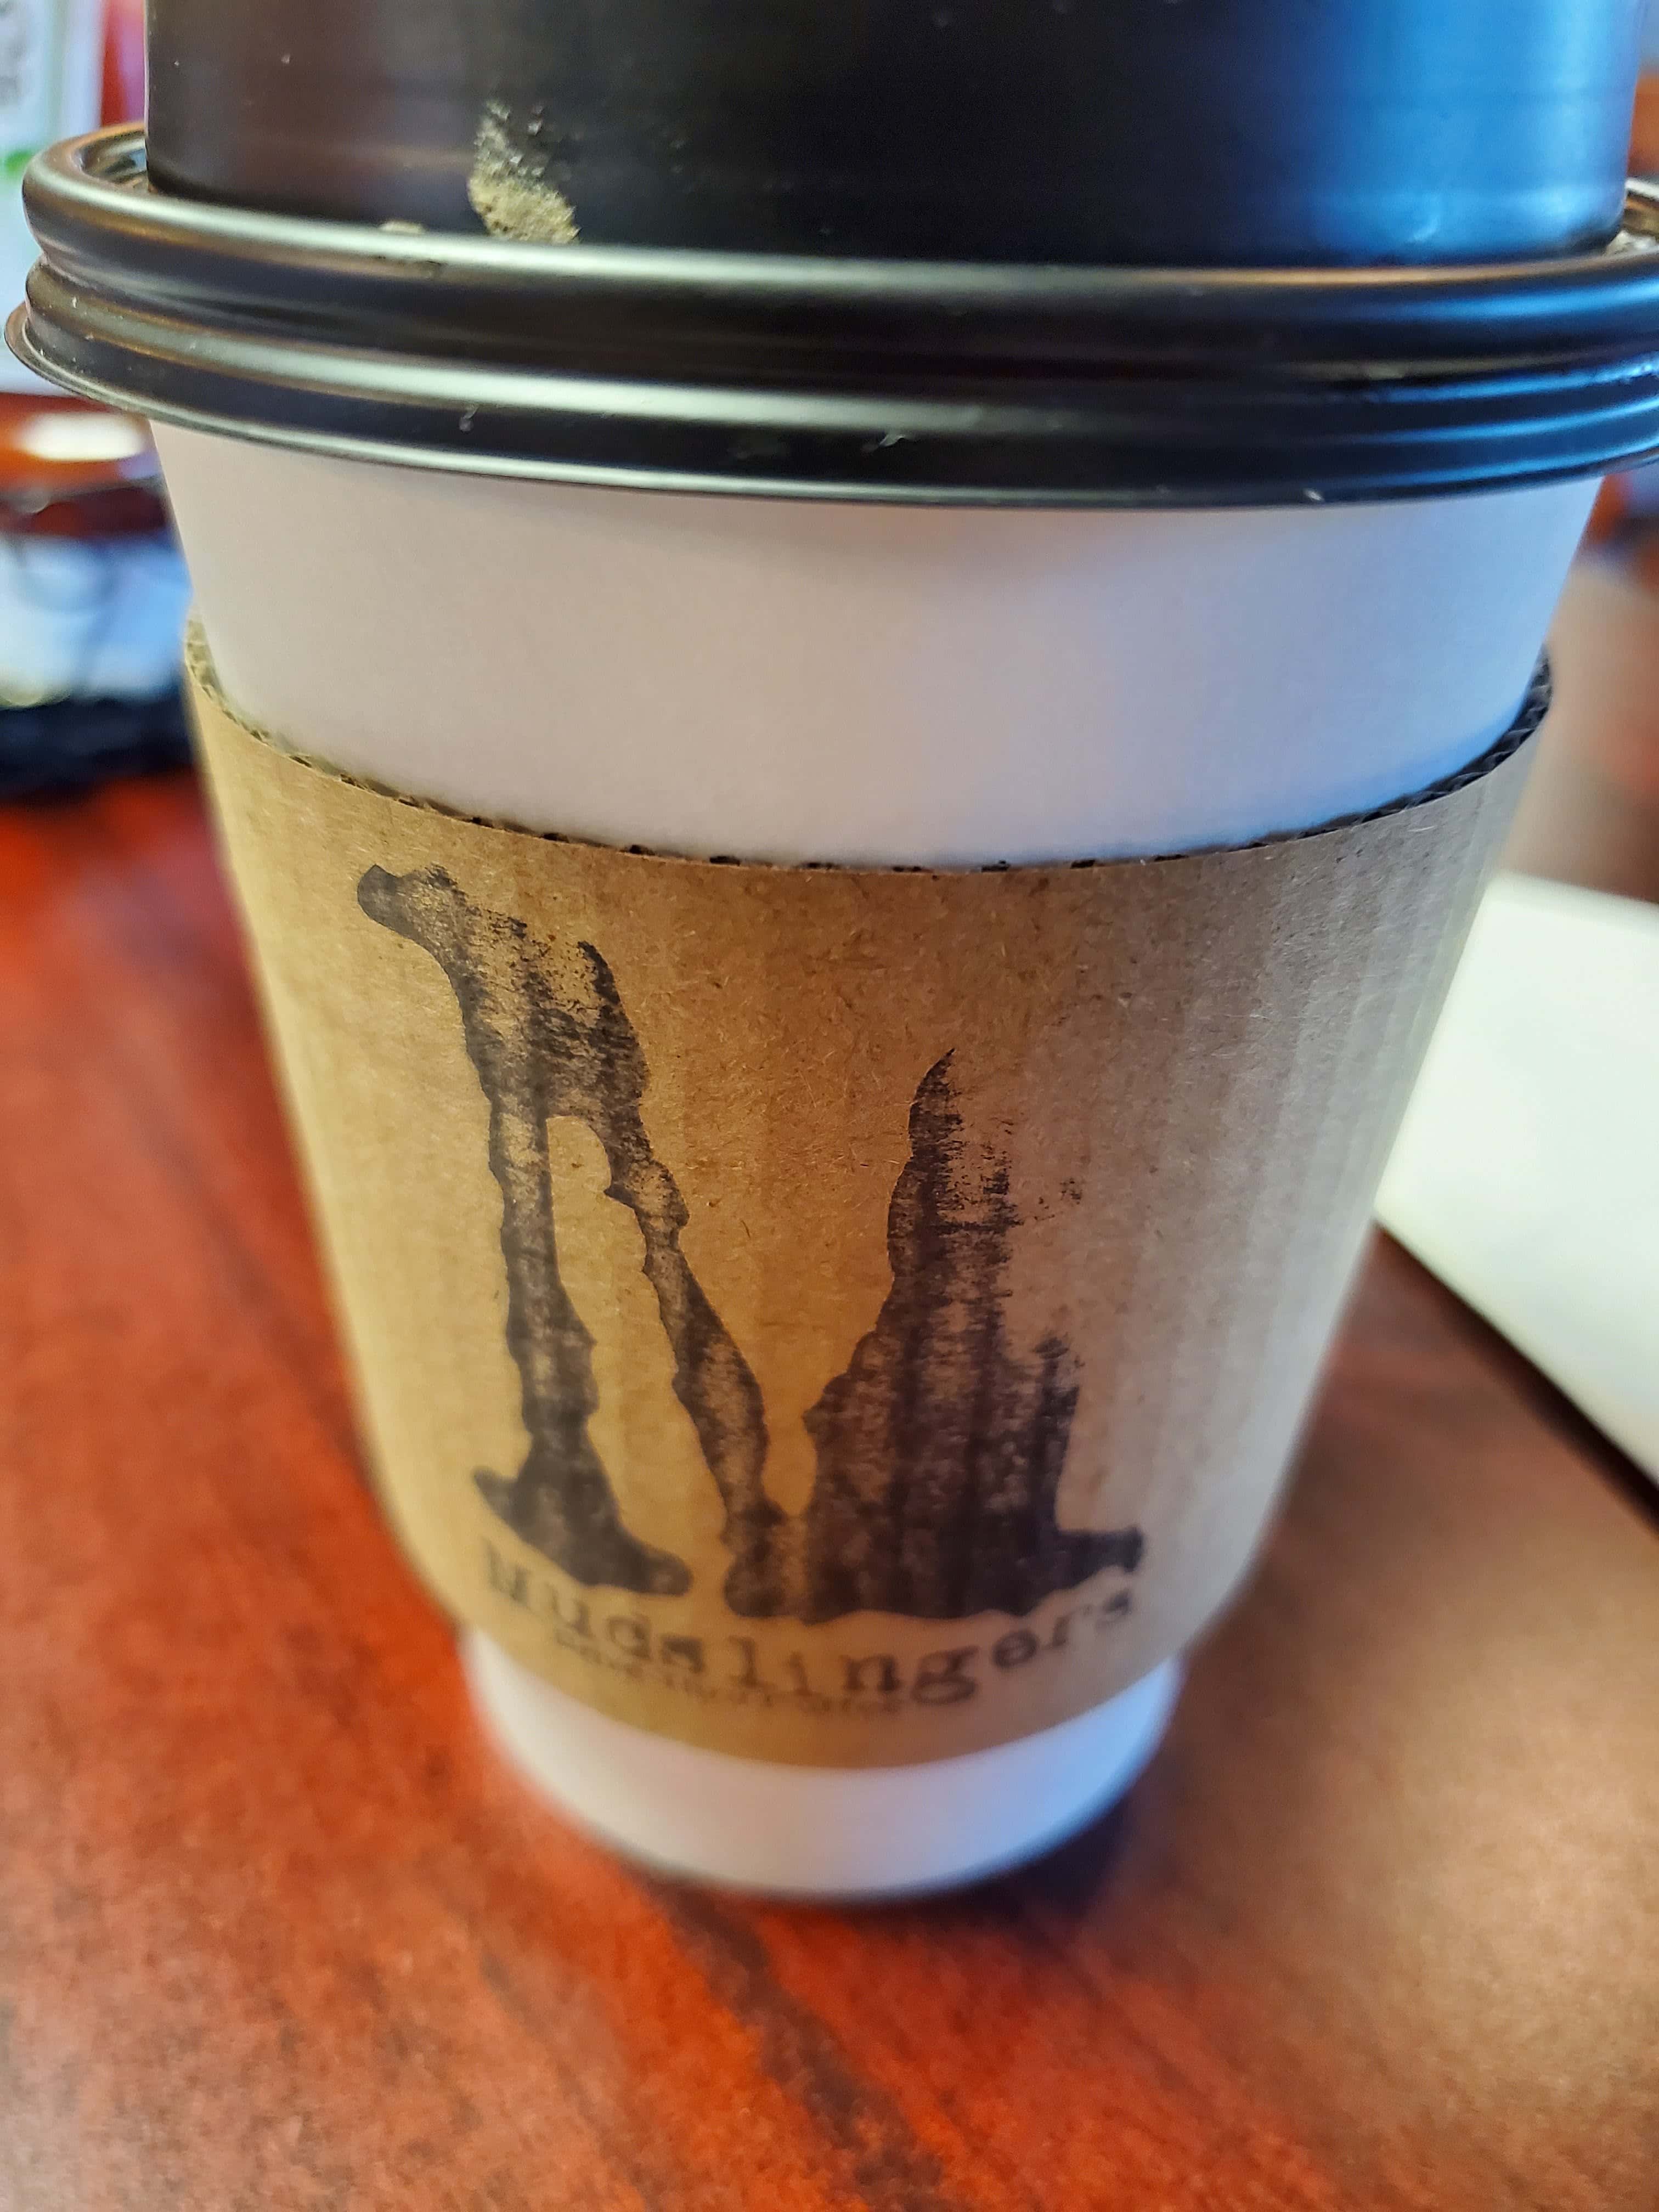 Mudslingers Drive-Thru Coffee - Atlanta (TX 75551), US, cozy coffee shop